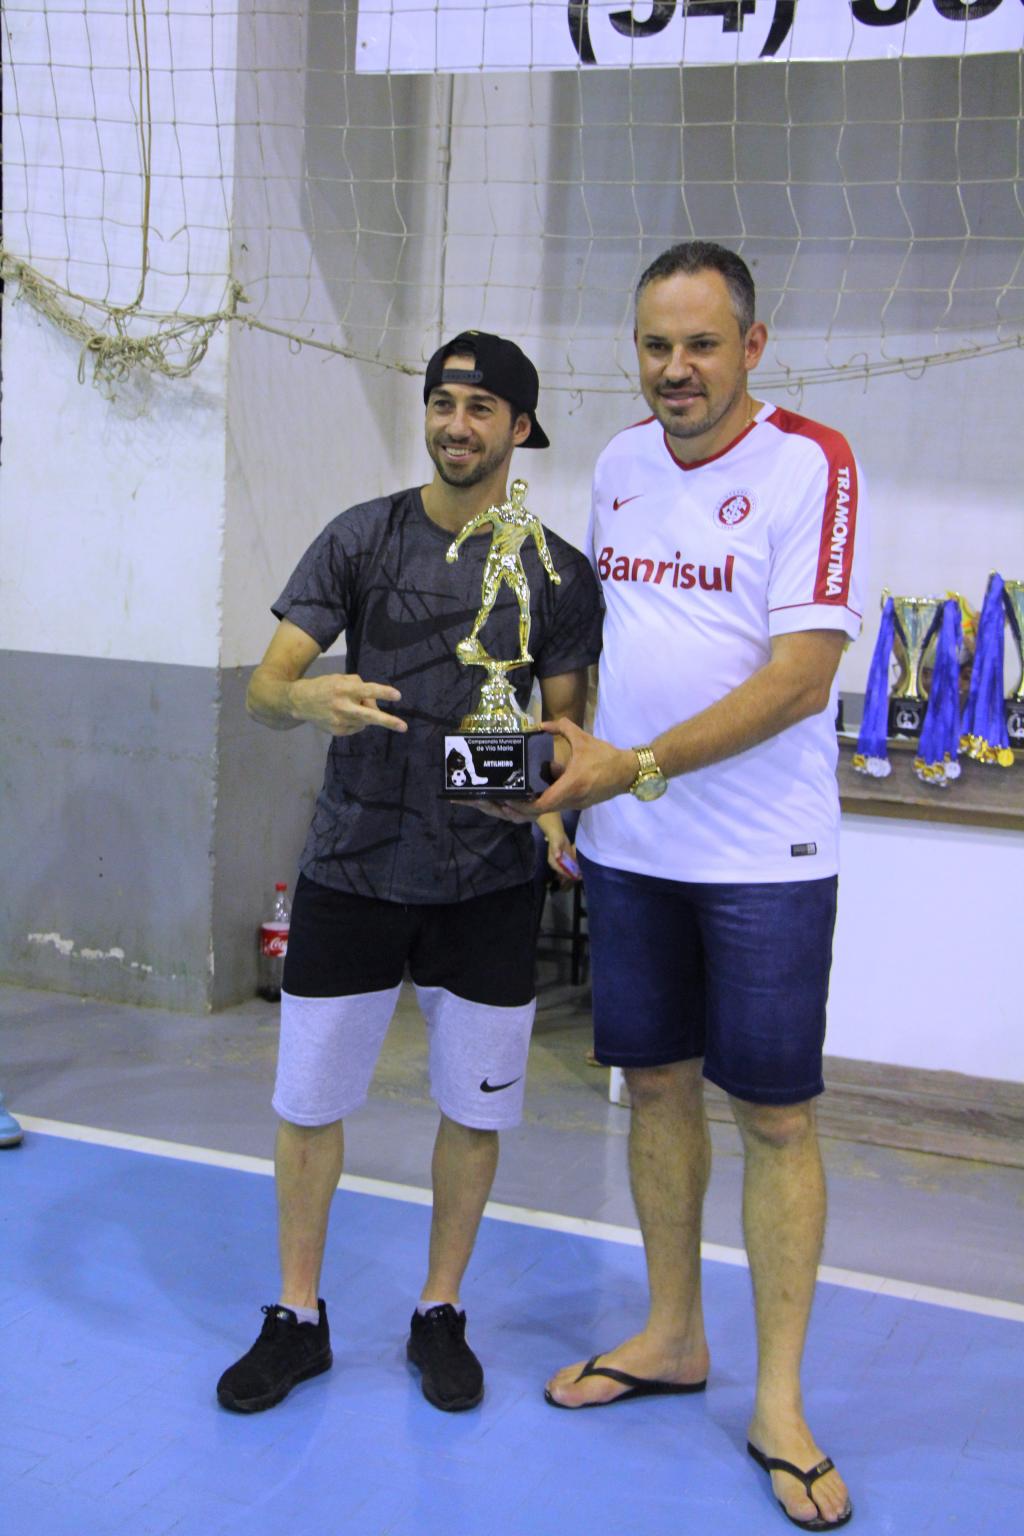 Imagem 4 - Conhecido o time campeão do Campeonato Municipal de Futsal 2018